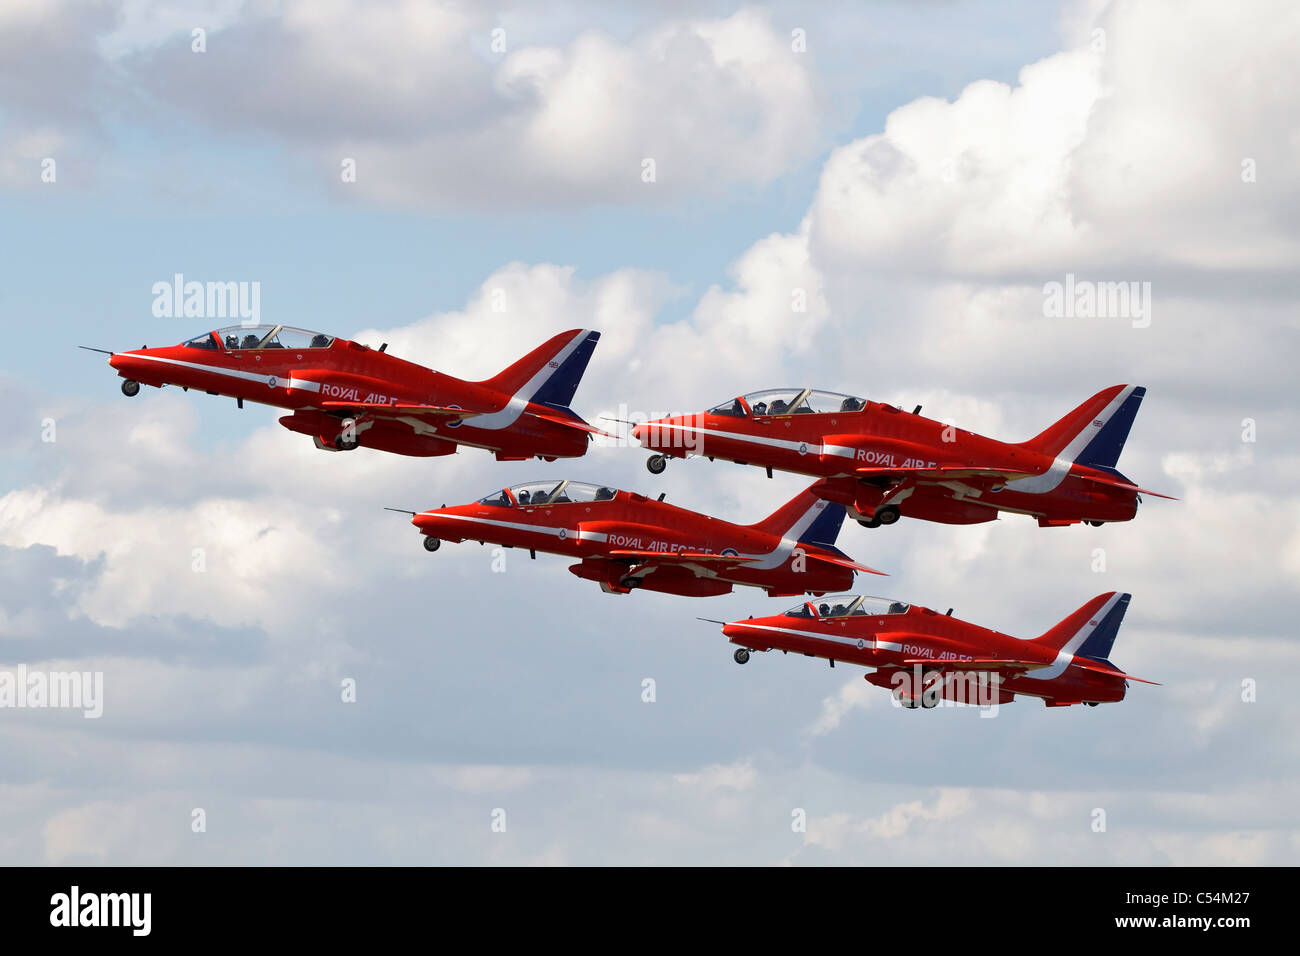 Bae Systems Hawk T1 aerei della RAF Rosso di frecce team display Foto Stock